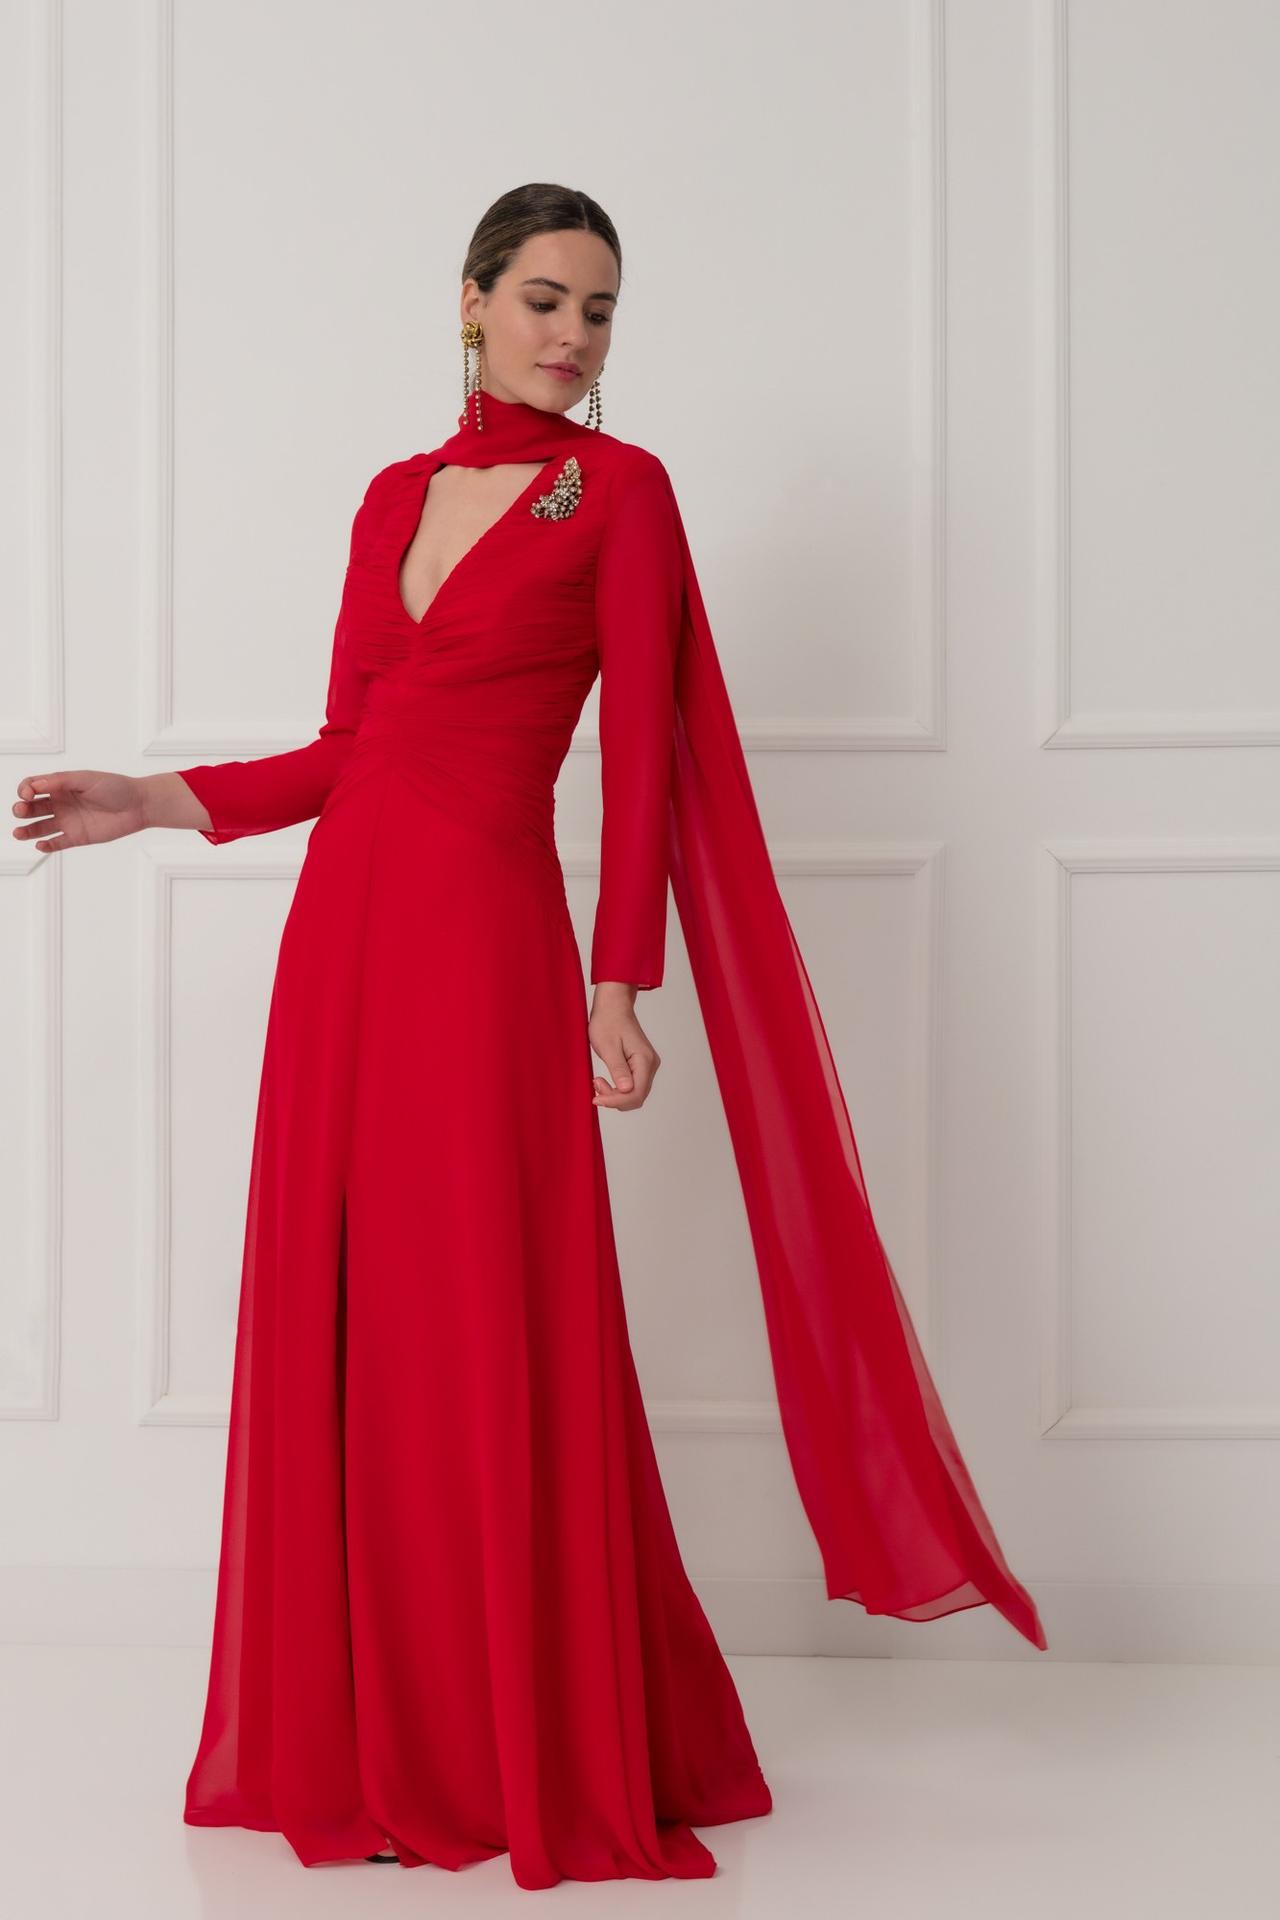 Madrina elegant sencilla: vestido de fiesta rojo con escote en pico y cola